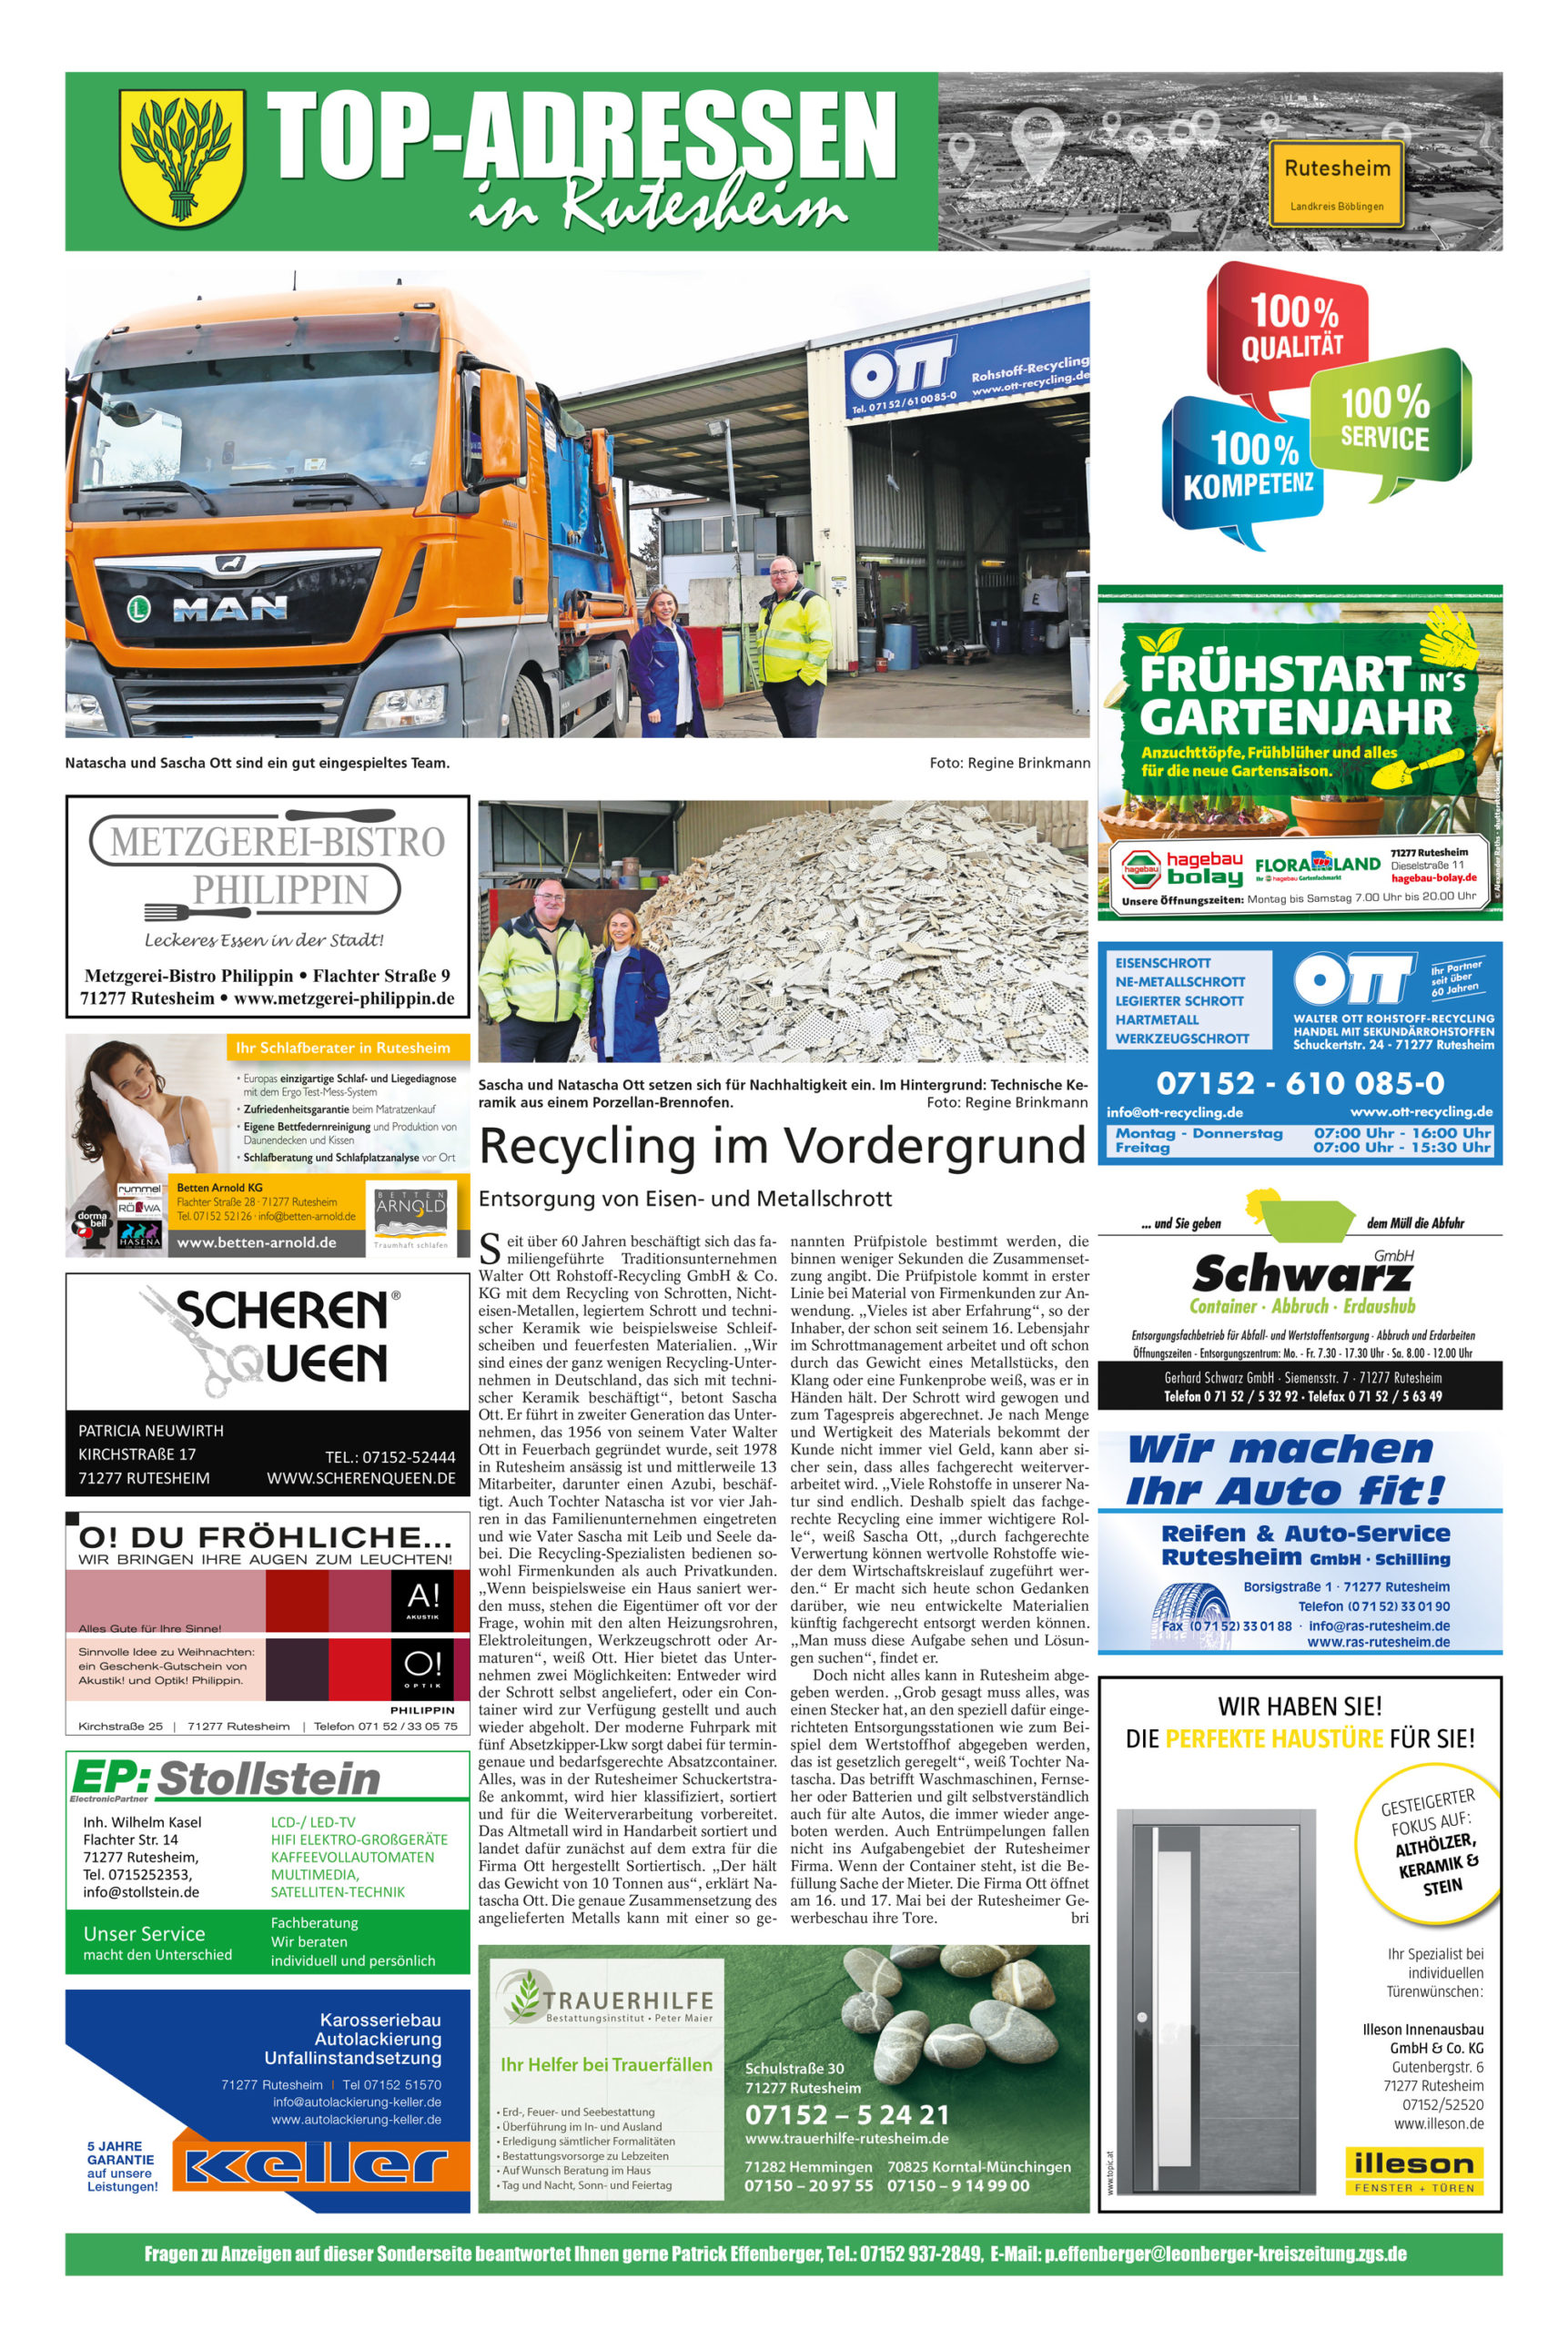 Ott-Recycling_Top-Adressen-Rutesheim